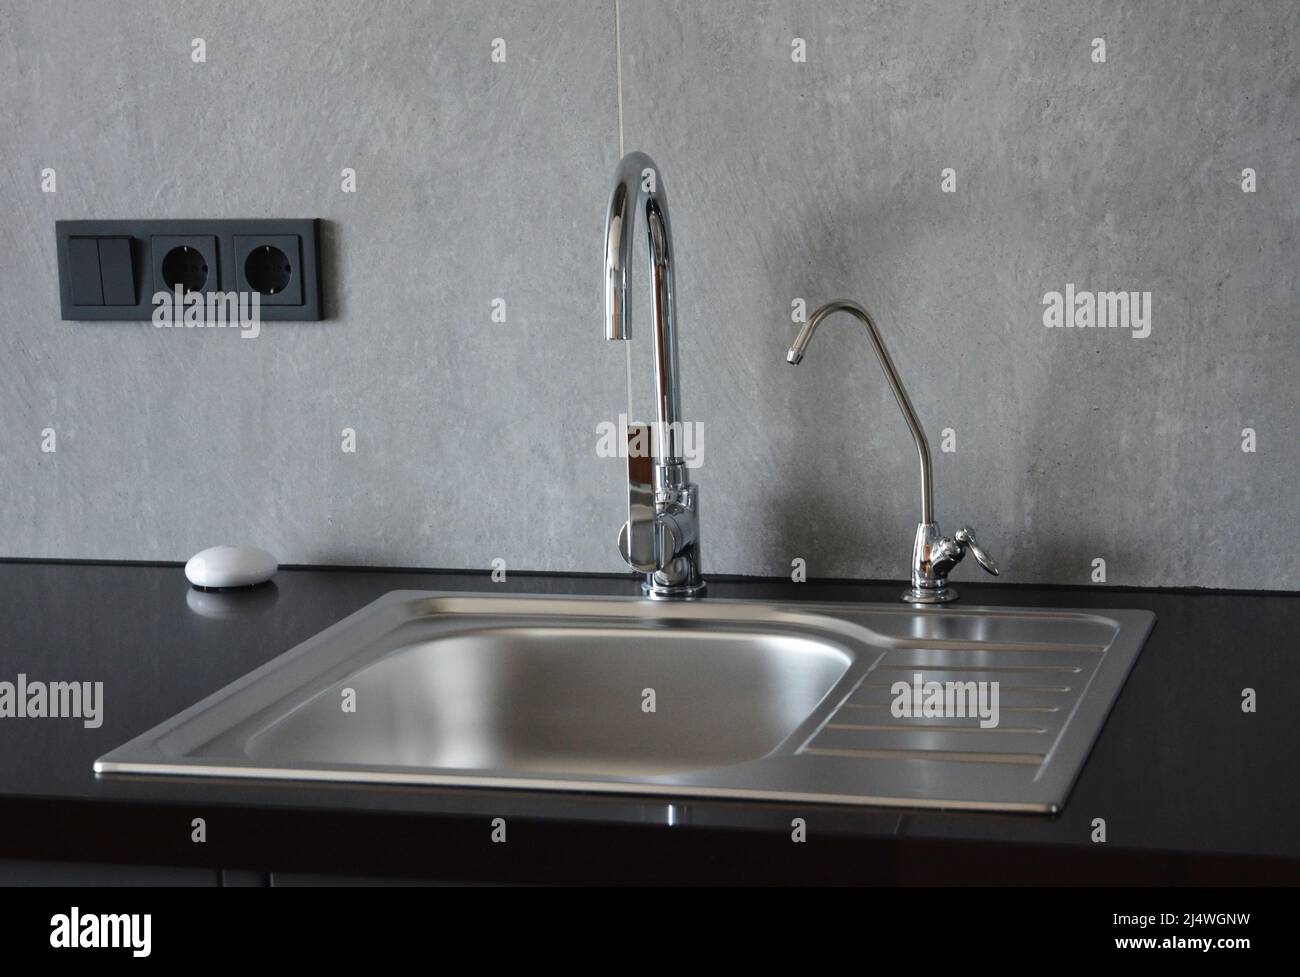 Ein Küchenspüle aus Metall auf einer schwarzen Küchenarbeitsfläche mit zwei Wasserhähnen, wobei einer ein kleiner Filterhahn für Trinkwasser ist. Stockfoto